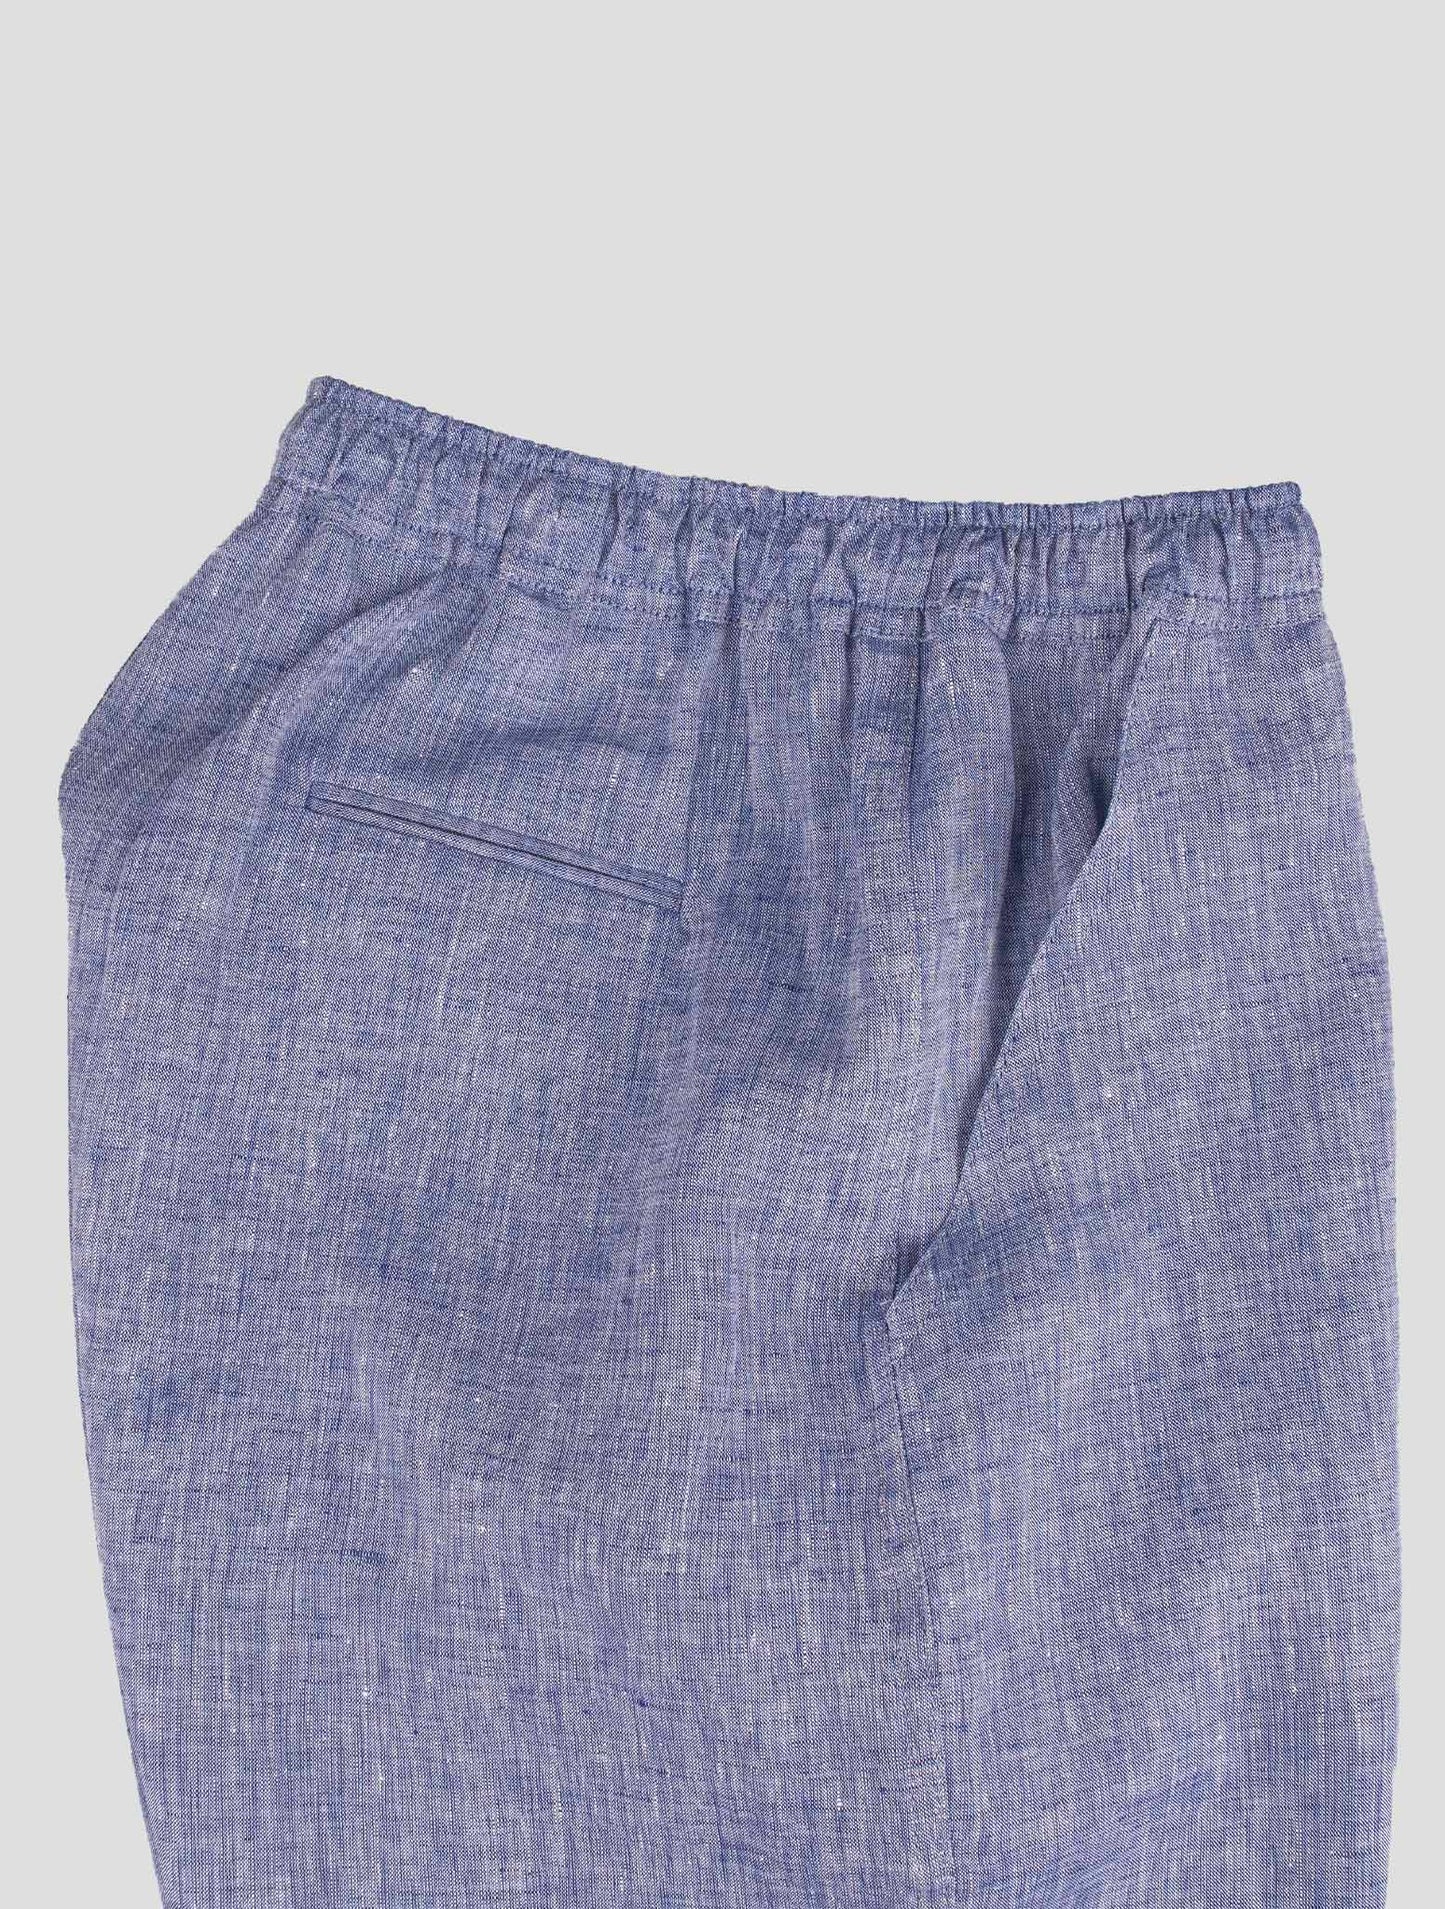 Traje a juego Kiton-azul Mariano y violeta pantalones cortos chándal